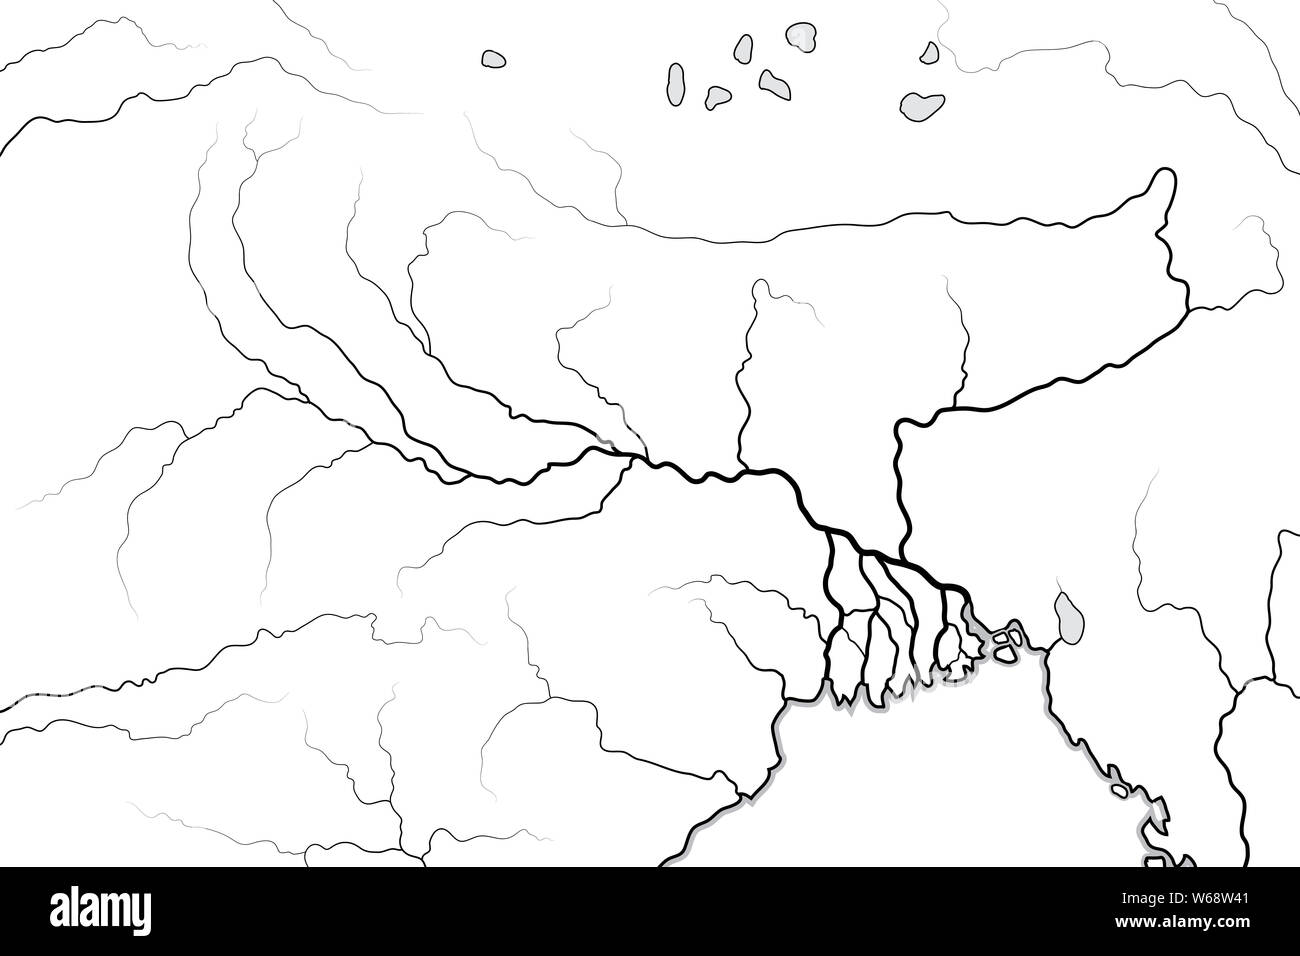 Mapa mundial de El Valle del Río Ganges & Delta: Río Ganges y Brahmaputra, del río y su delta, India, Himalaya, Nepal, Bengal, Bangladesh, Myanmar Foto de stock